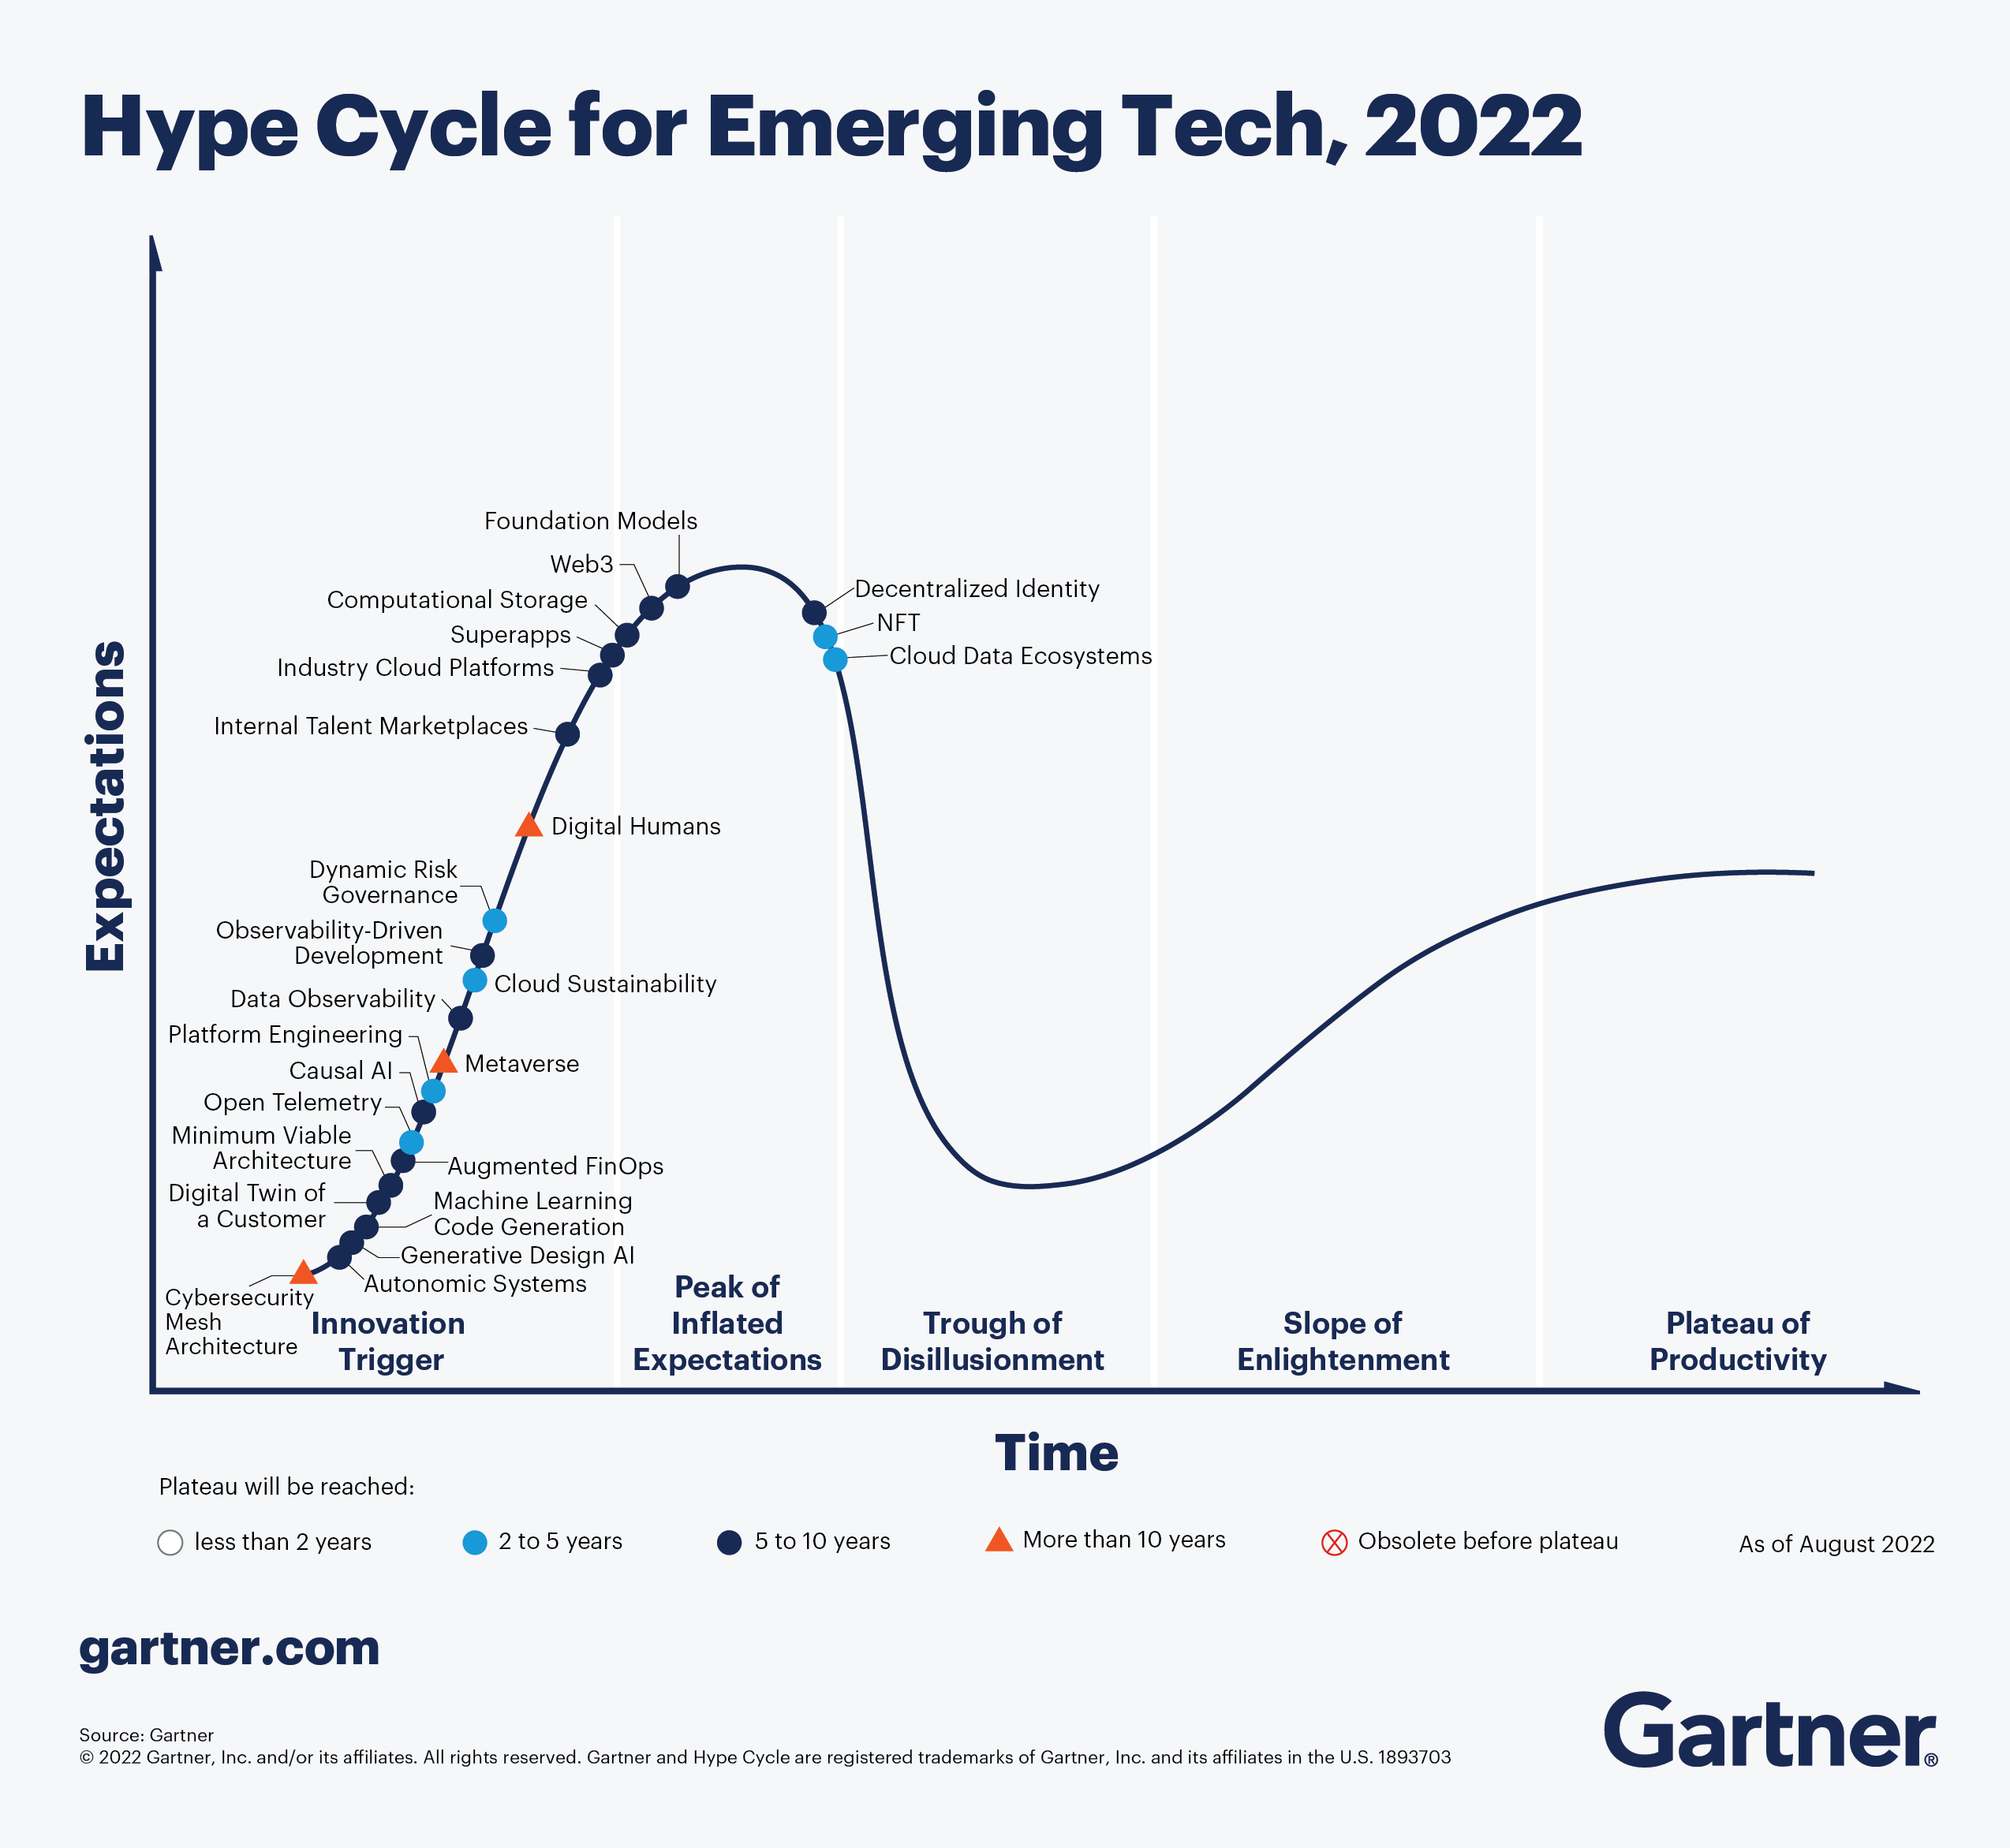 Цикл технологий Gartner &laquo;Hype Cycle for Emerging Technologies&raquo; 2022 года. Согласно анализу экспертов компании, метавселенные раскроют свой потенциал примерно через 10 лет.